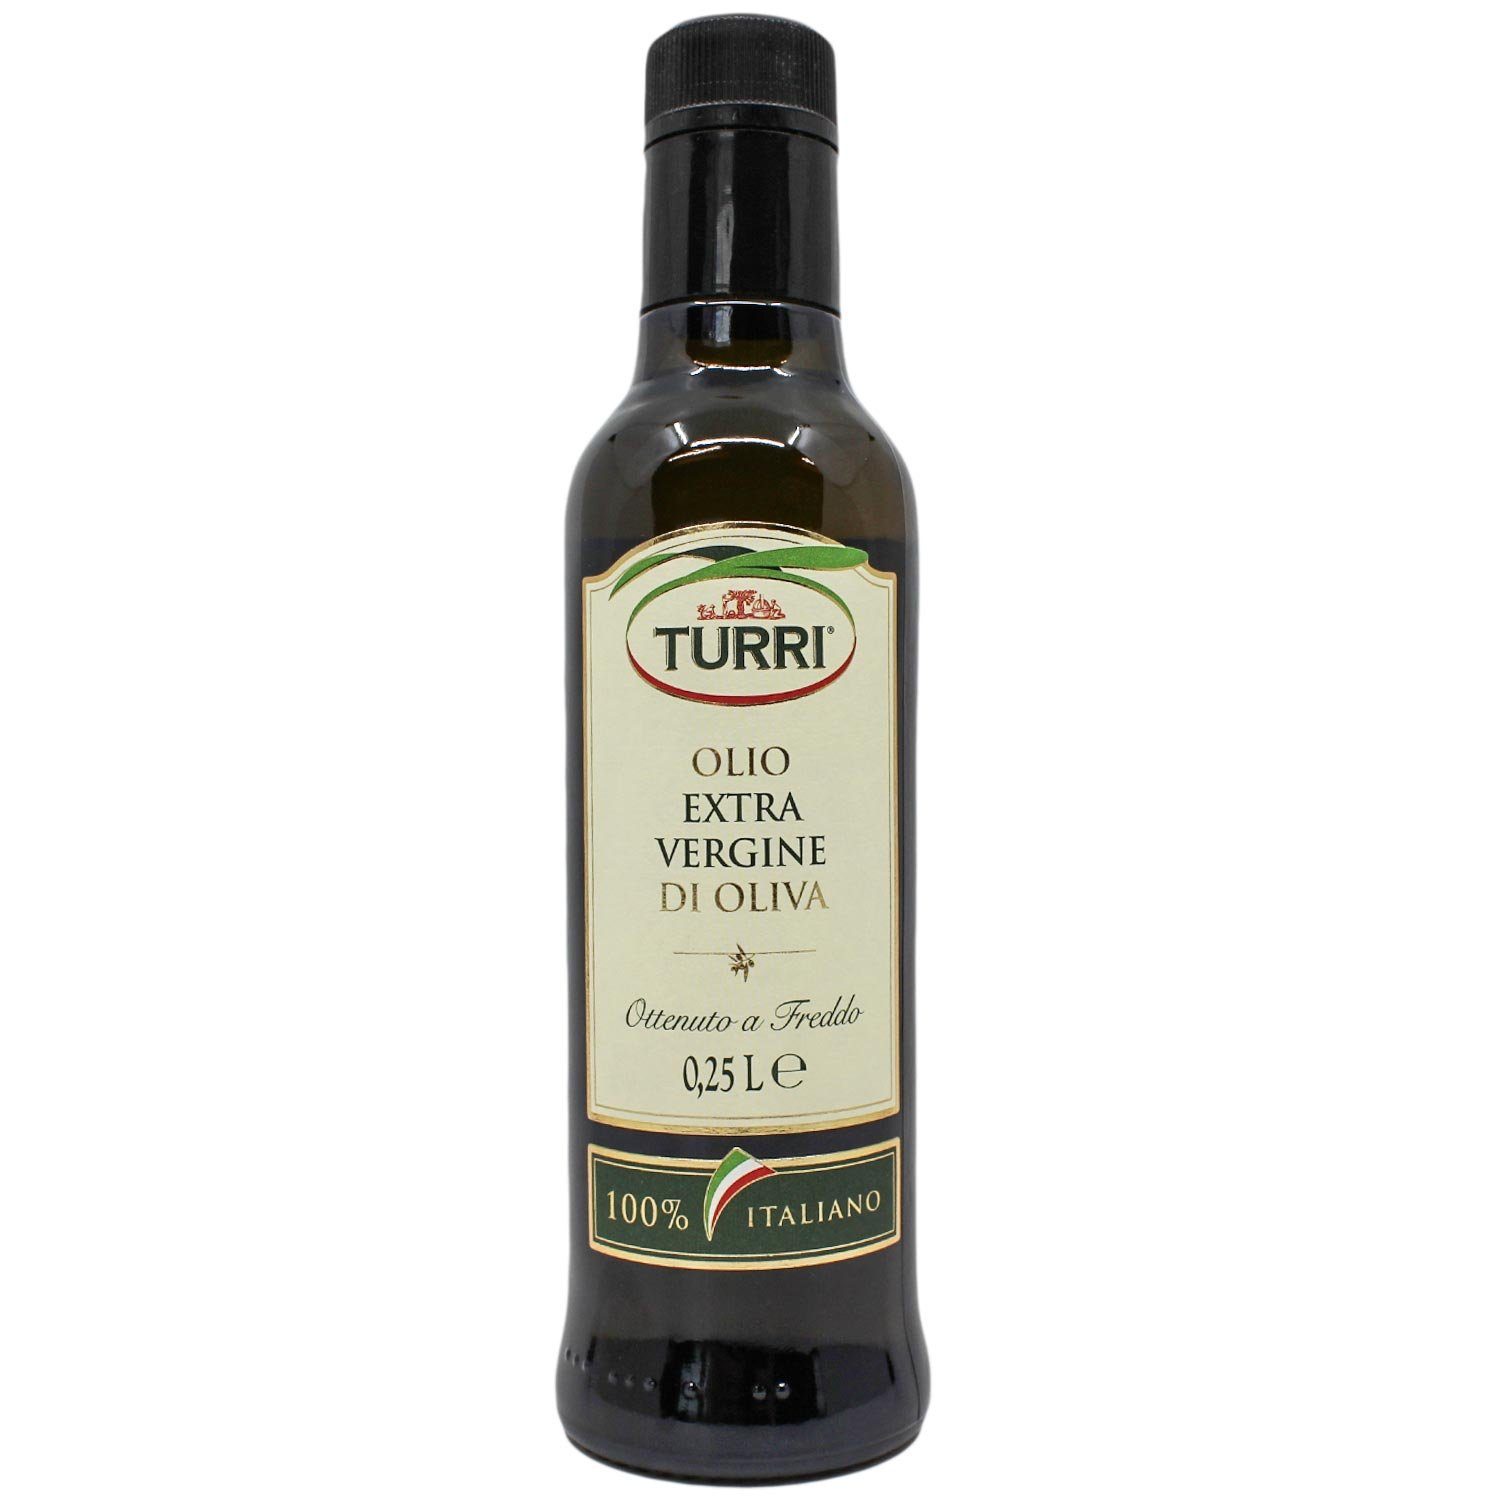 Landshop24 Gewürzregal Turri Olivenöl extra vergine, 0,25 Liter, 100% Original Italien, MHD: 18-01-2025 1-tlg., Speiseöl Italien Gardasee